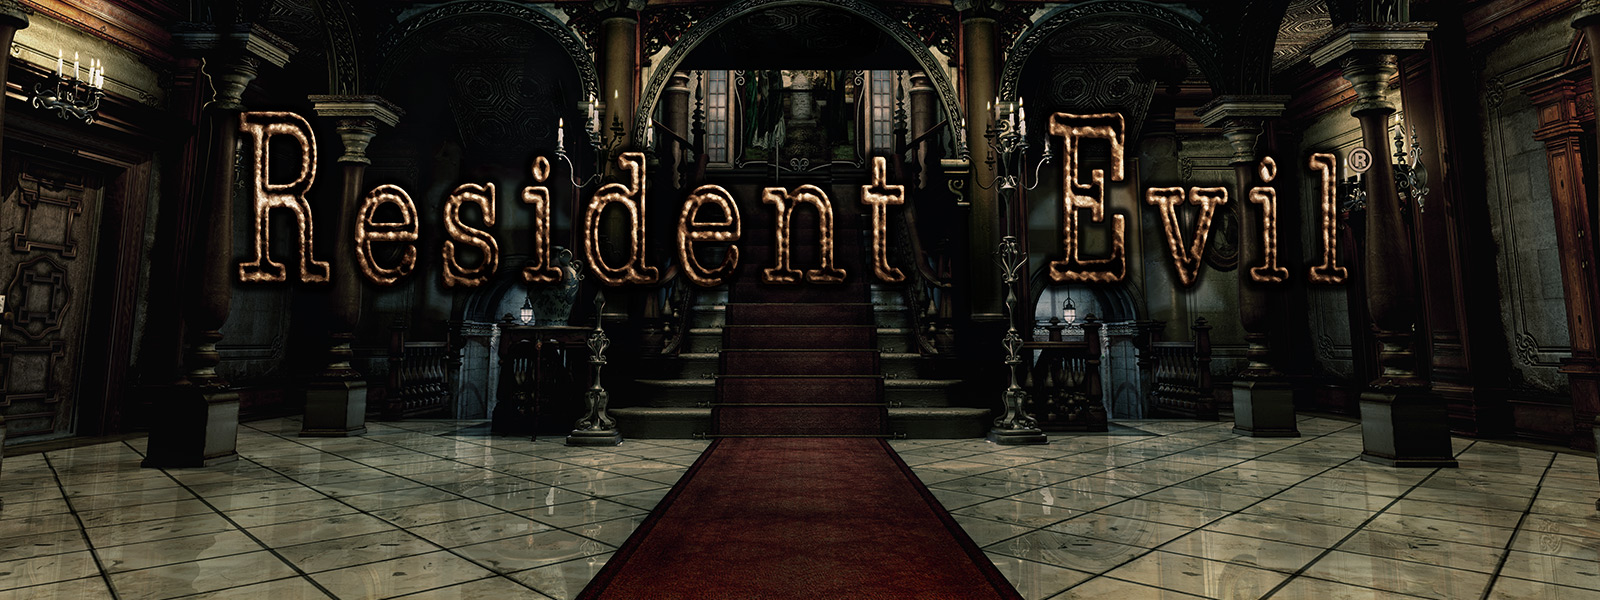 Resident Evil, scene fra storslått hall med rød løper opp trappene